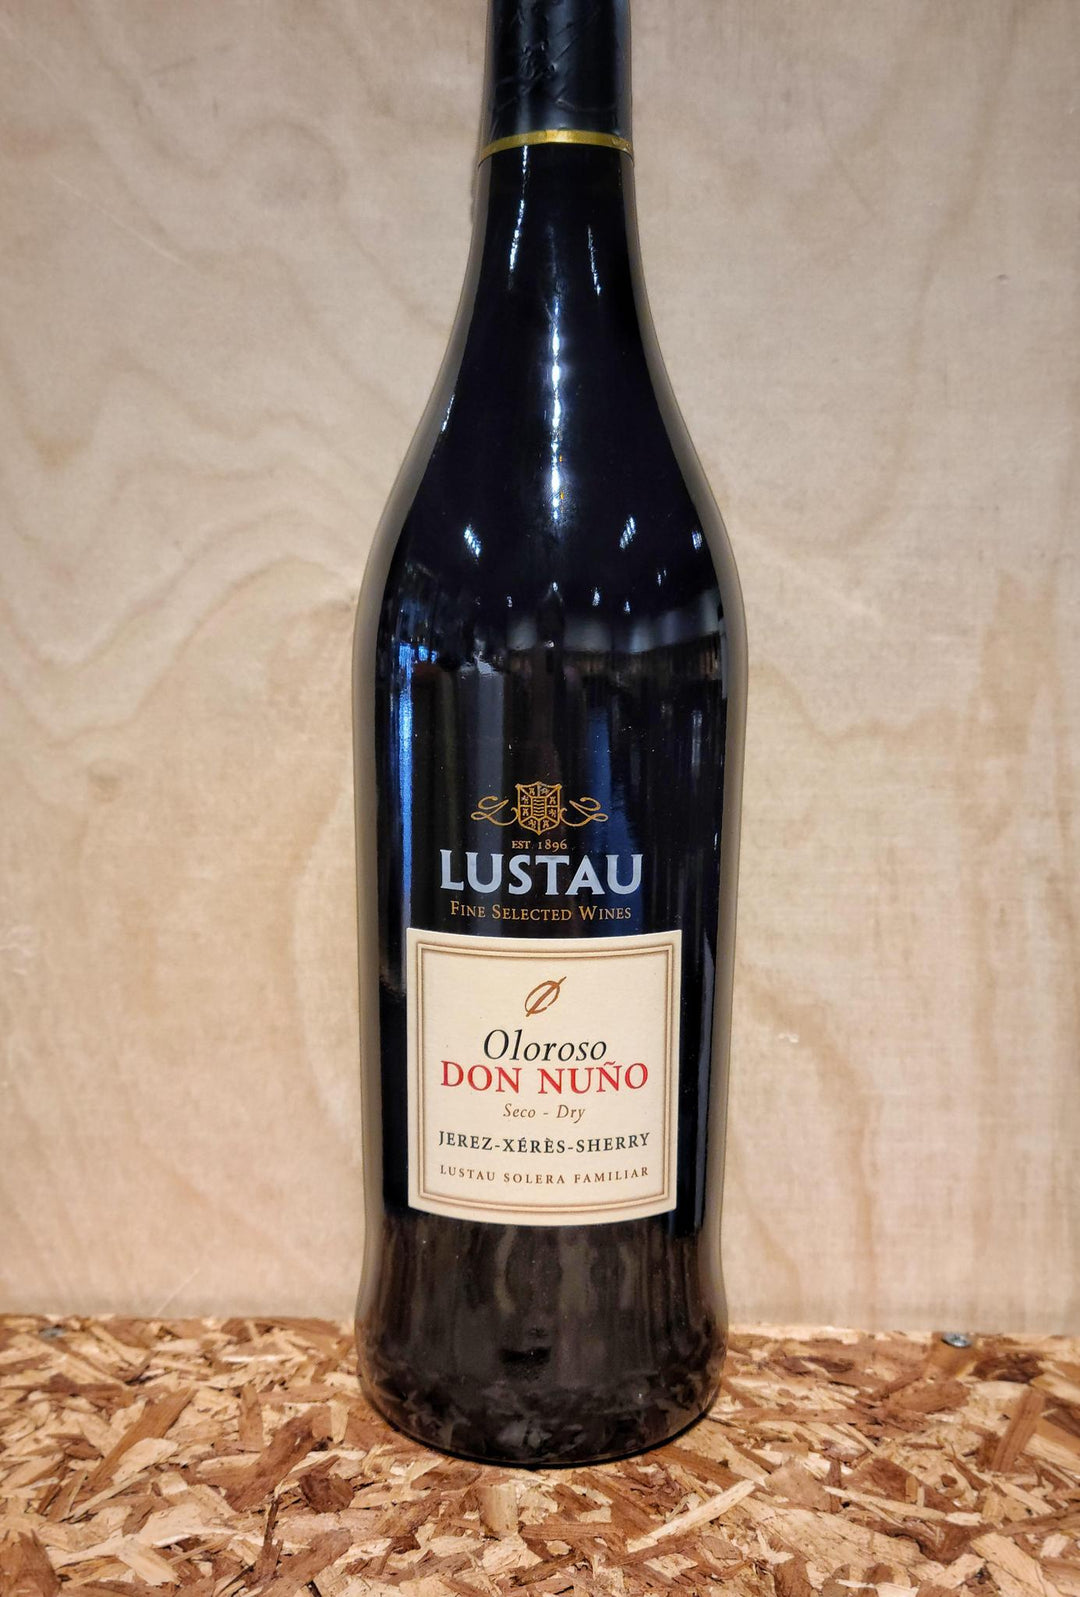 Lustau Don Nuno Dry Oloroso NV (Jerez-Xeres-Sherry, Spain)